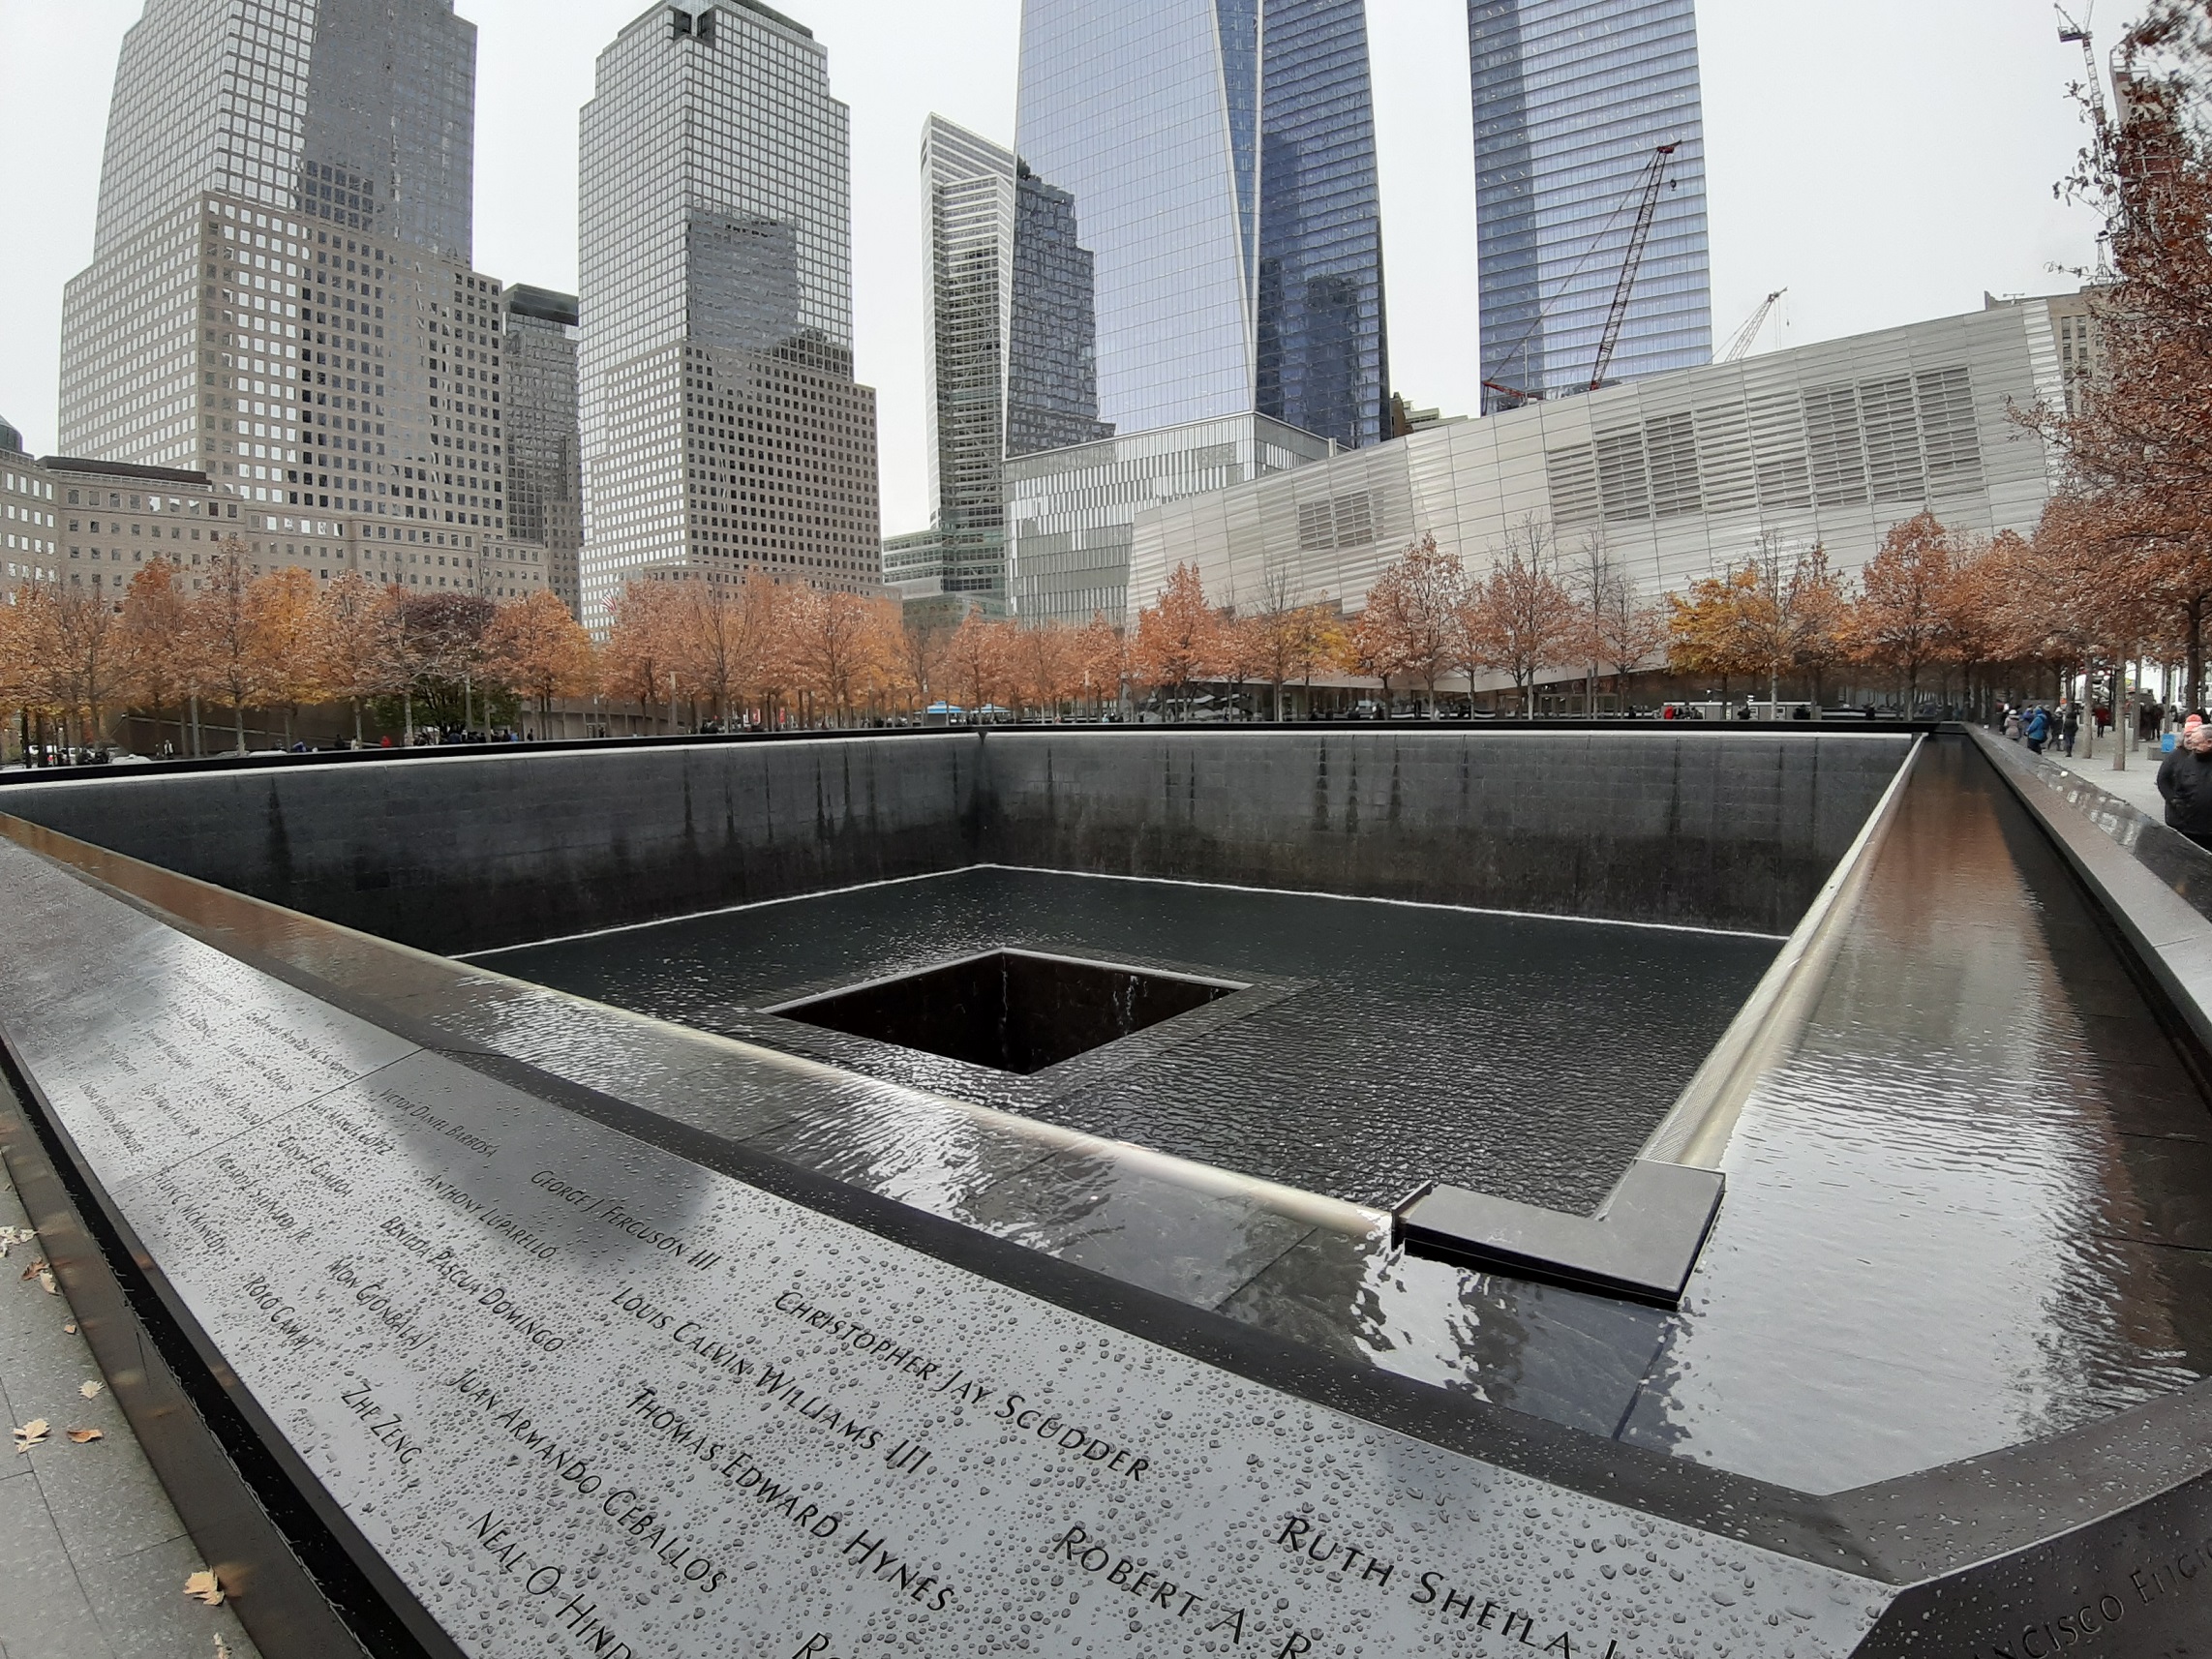 New York City - 9/11 Memorial